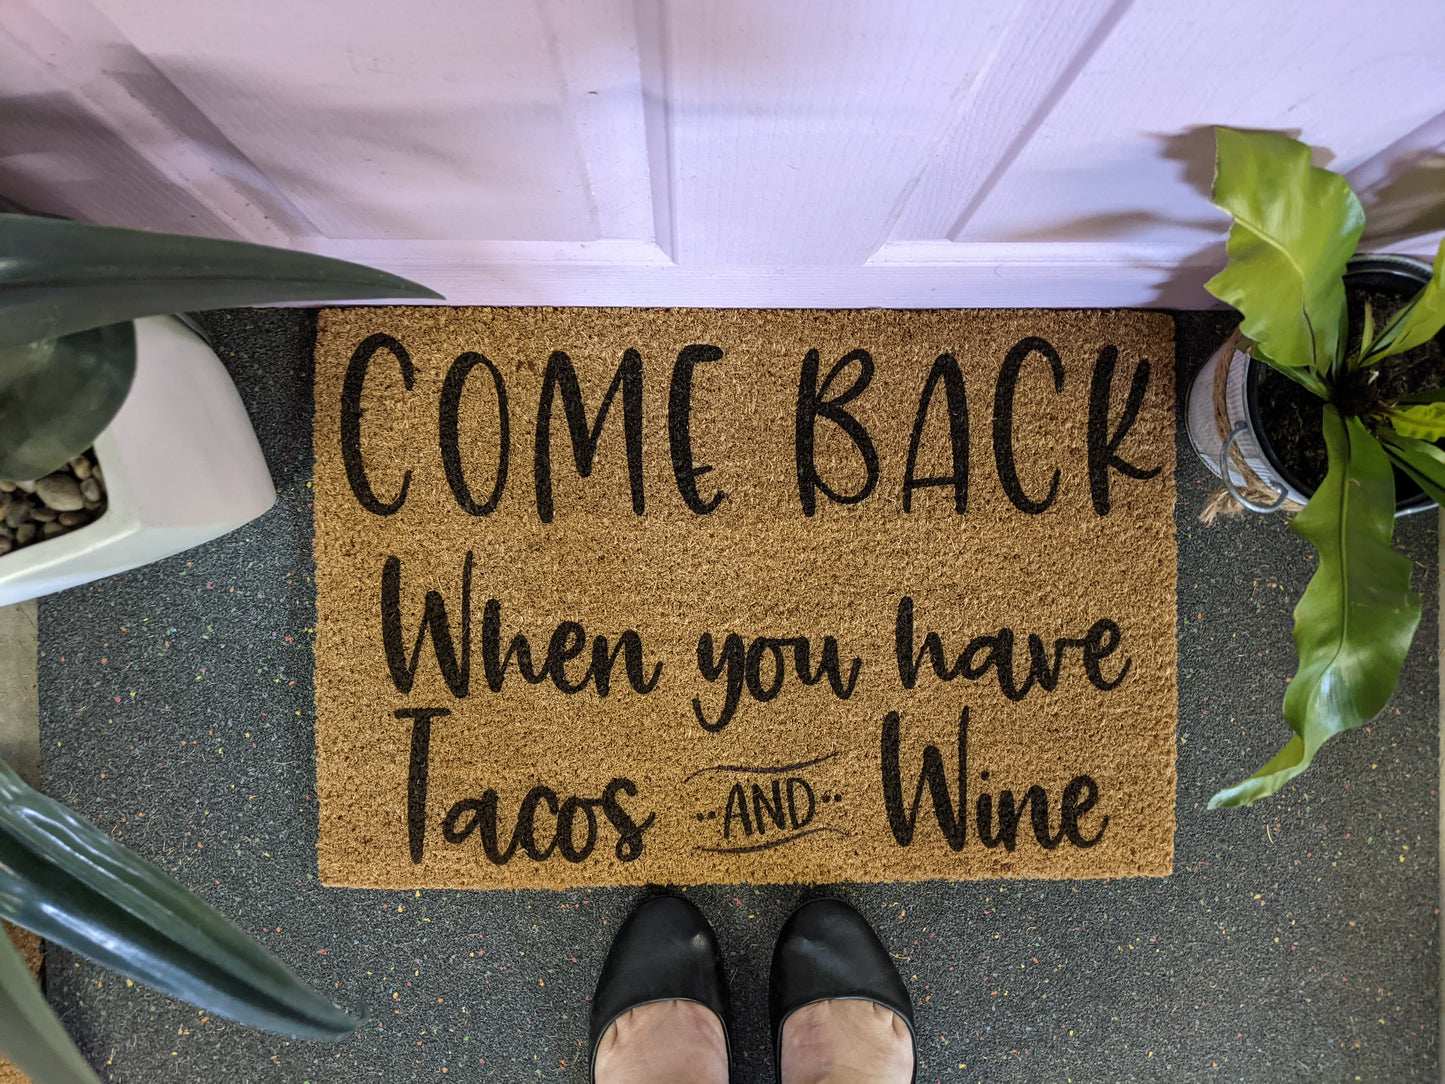 Tacos and wine doormat